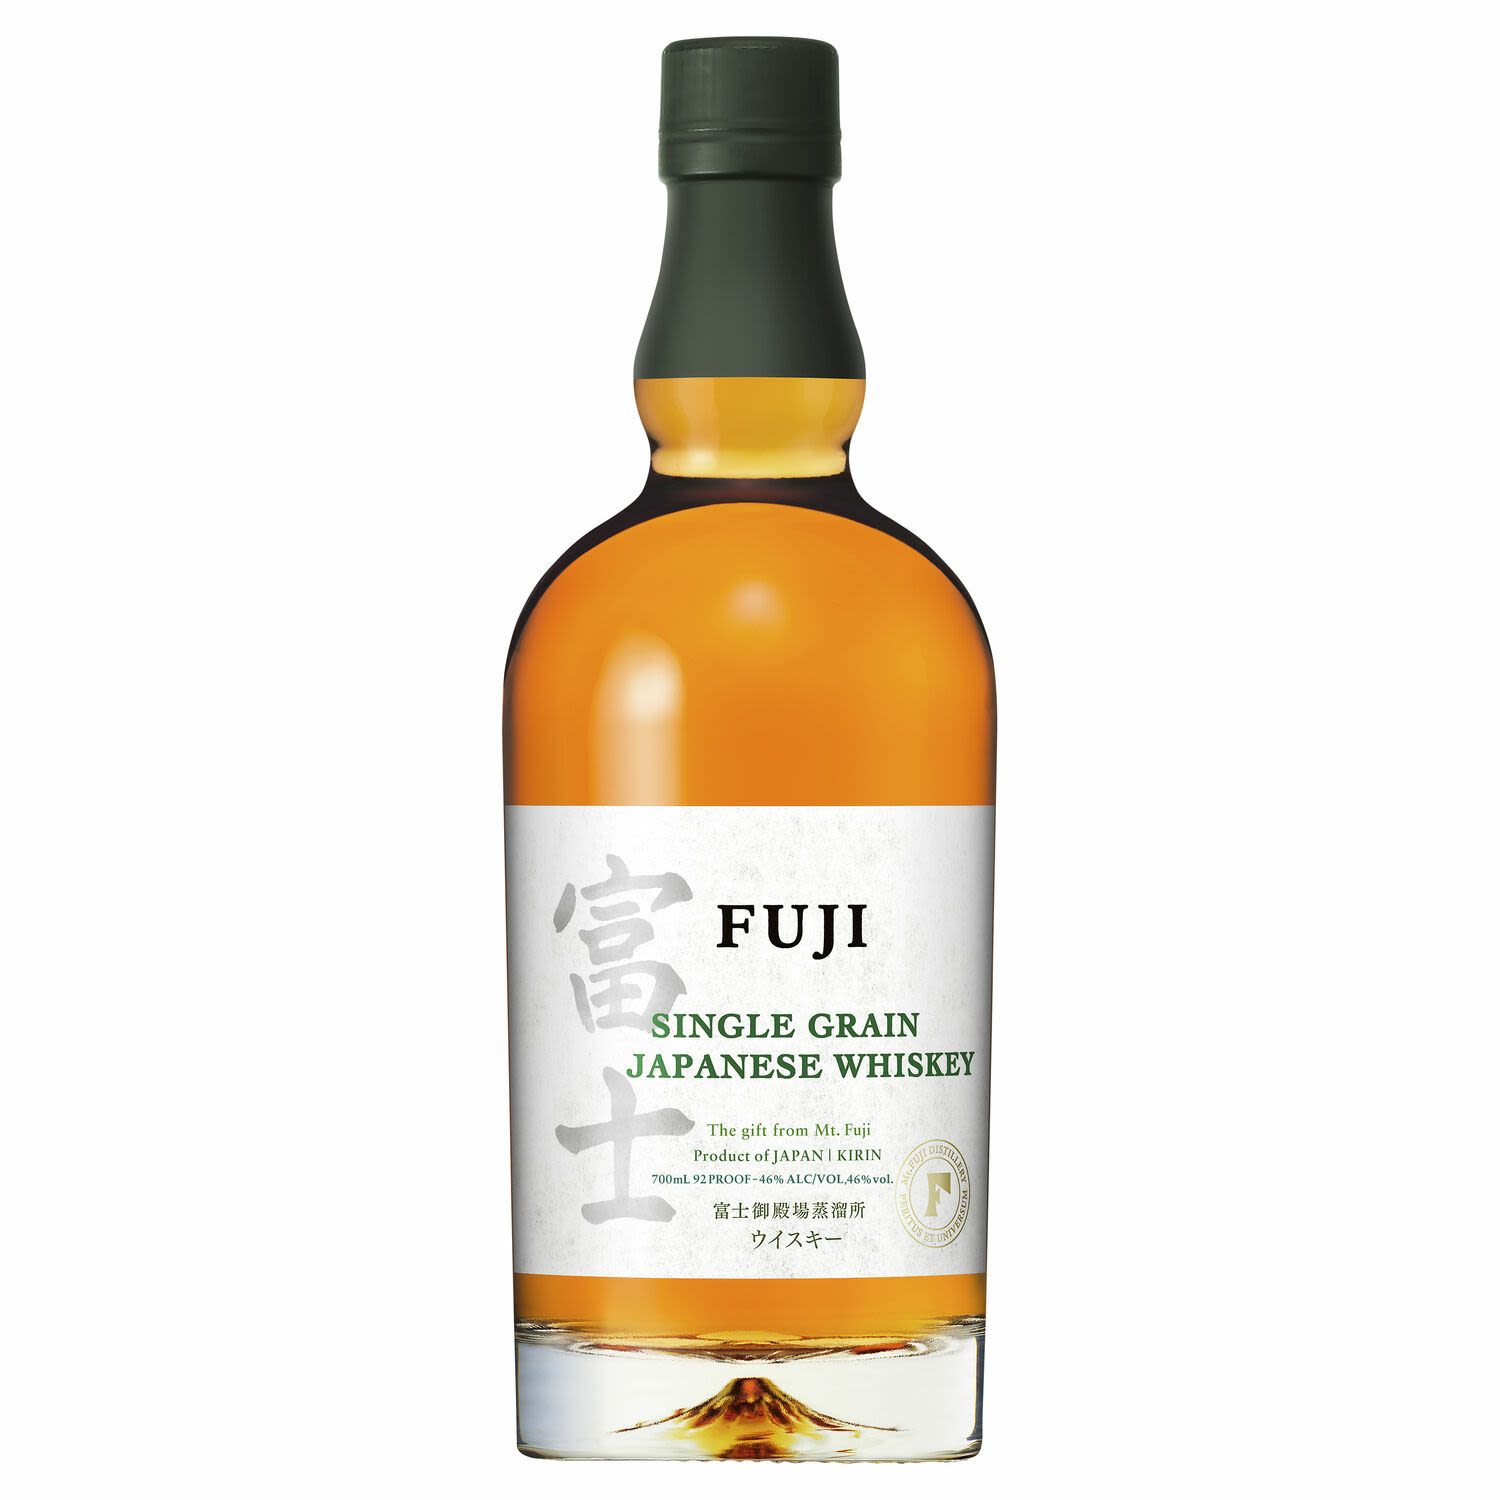 Fuji Single Grain Japanese Whiskey 700mL Bottle